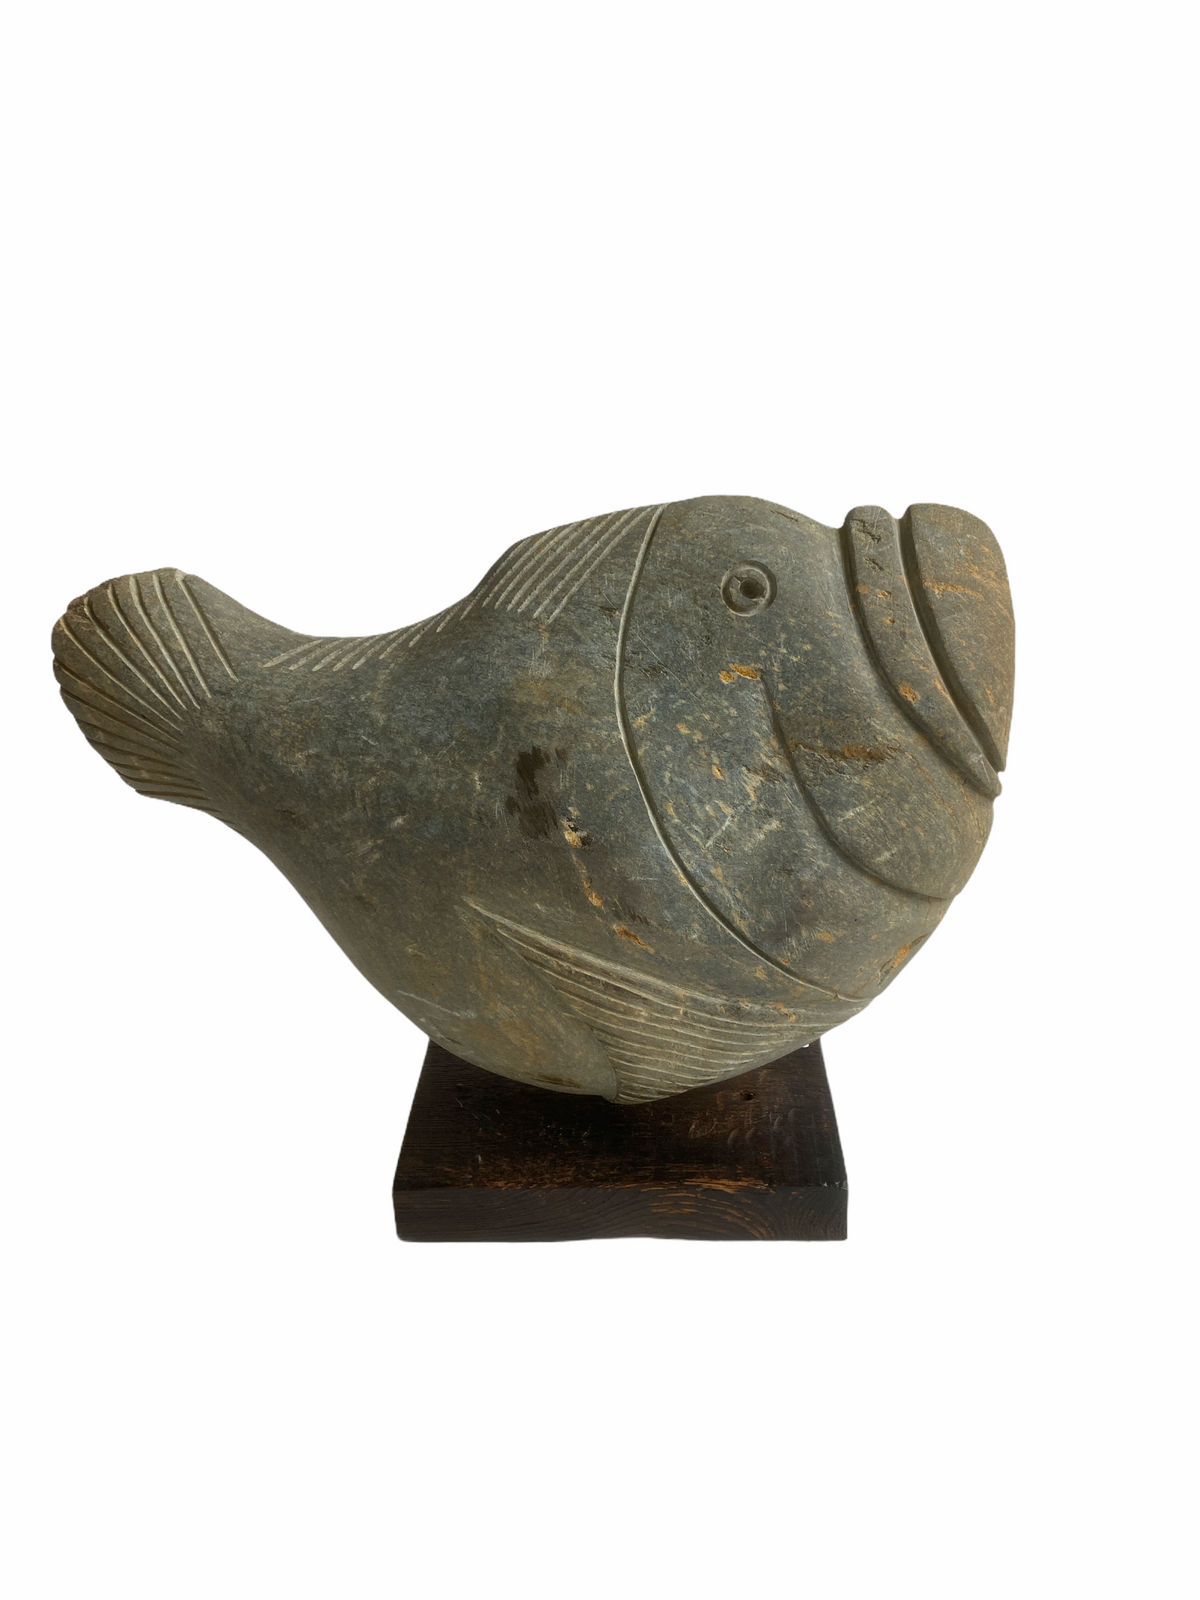 Stone Fish Sculpture - Zimbabwe (02)